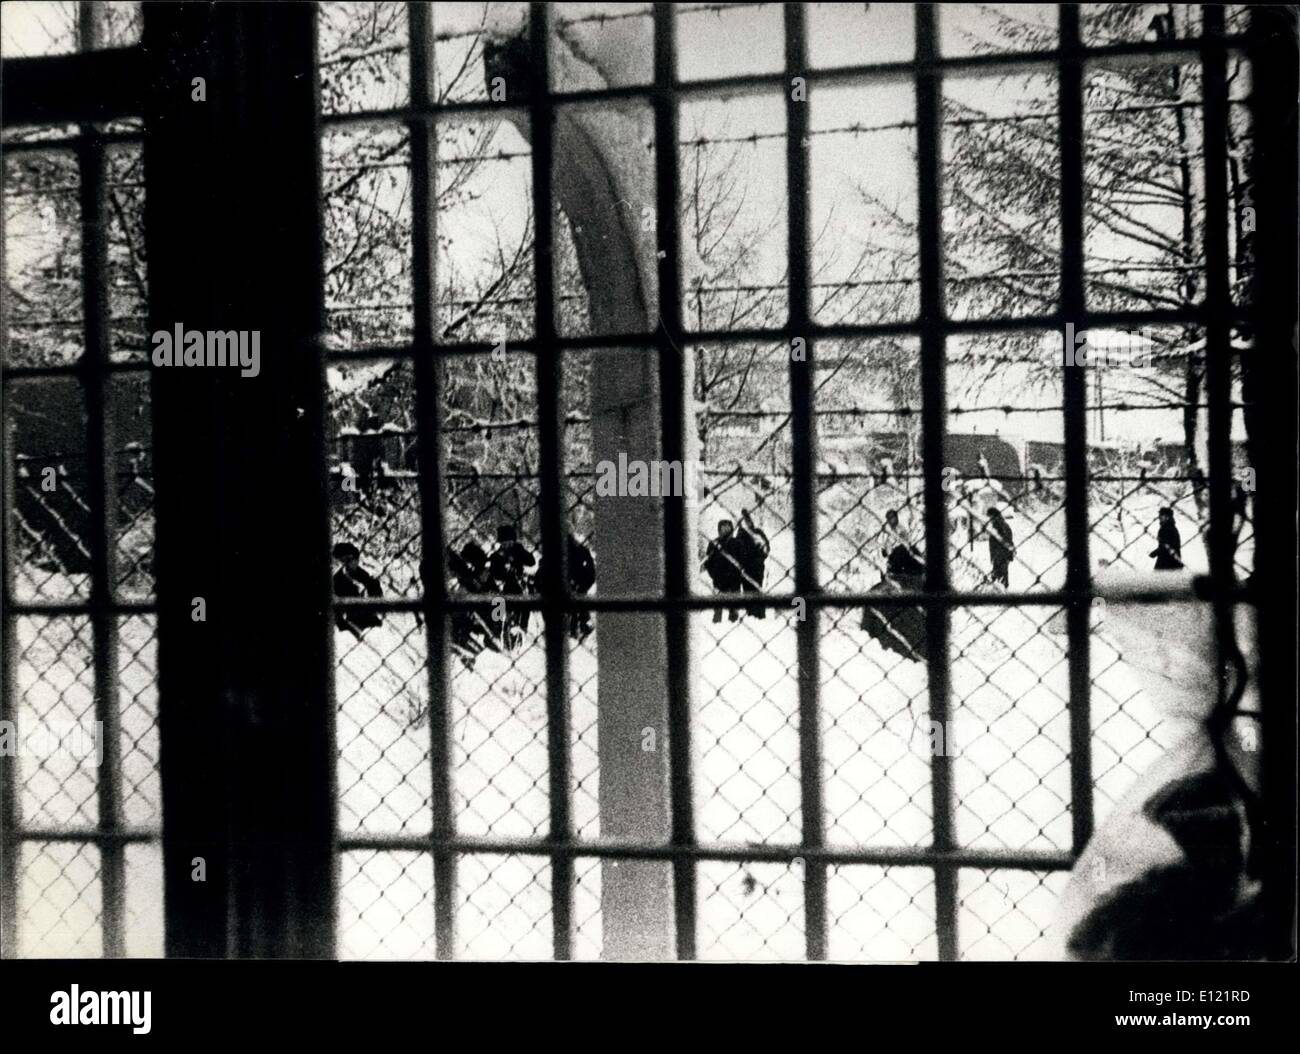 01 octobre 1982 - Premières photos du Polonais dans les camps d'internement des Membres de ''Solidarité'' trade union et d'autres intellectuels sont vus à travers la fenêtre sur le jardin dénudé de camp d'internement de Bialolenka près de Varsovie (Pologne). Ce sont les premières images d'être porté à l'Europe de l'Ouest récemment. Au camp de Bialolenka et d'autres gouvernement loi martiale polonaise arrêté des membres de ''Solidarité'' et d'autres personnes des ''Ddissidents' Banque D'Images